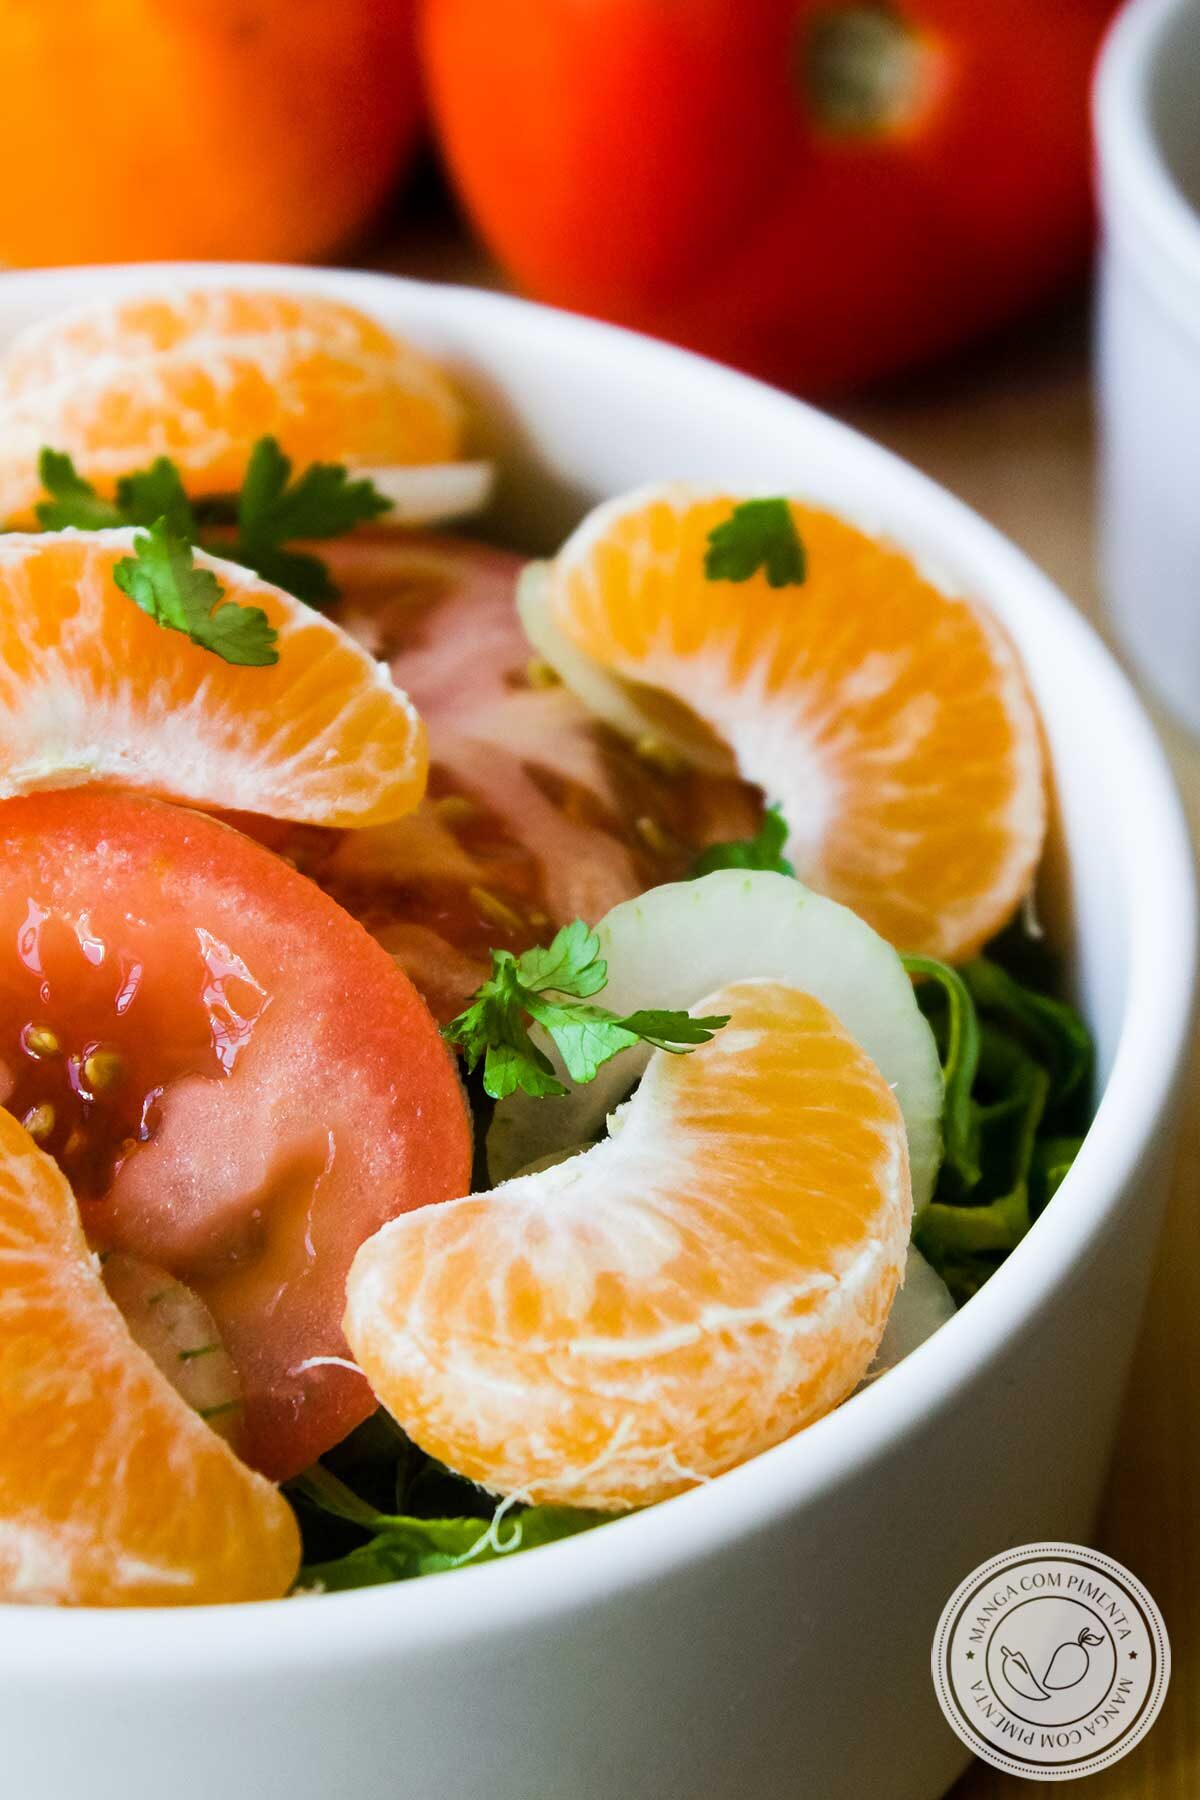 Receita de Salada de Tangerina com Couve e Tomate - uma salada deliciosa para uma refeição simples do dia a dia.